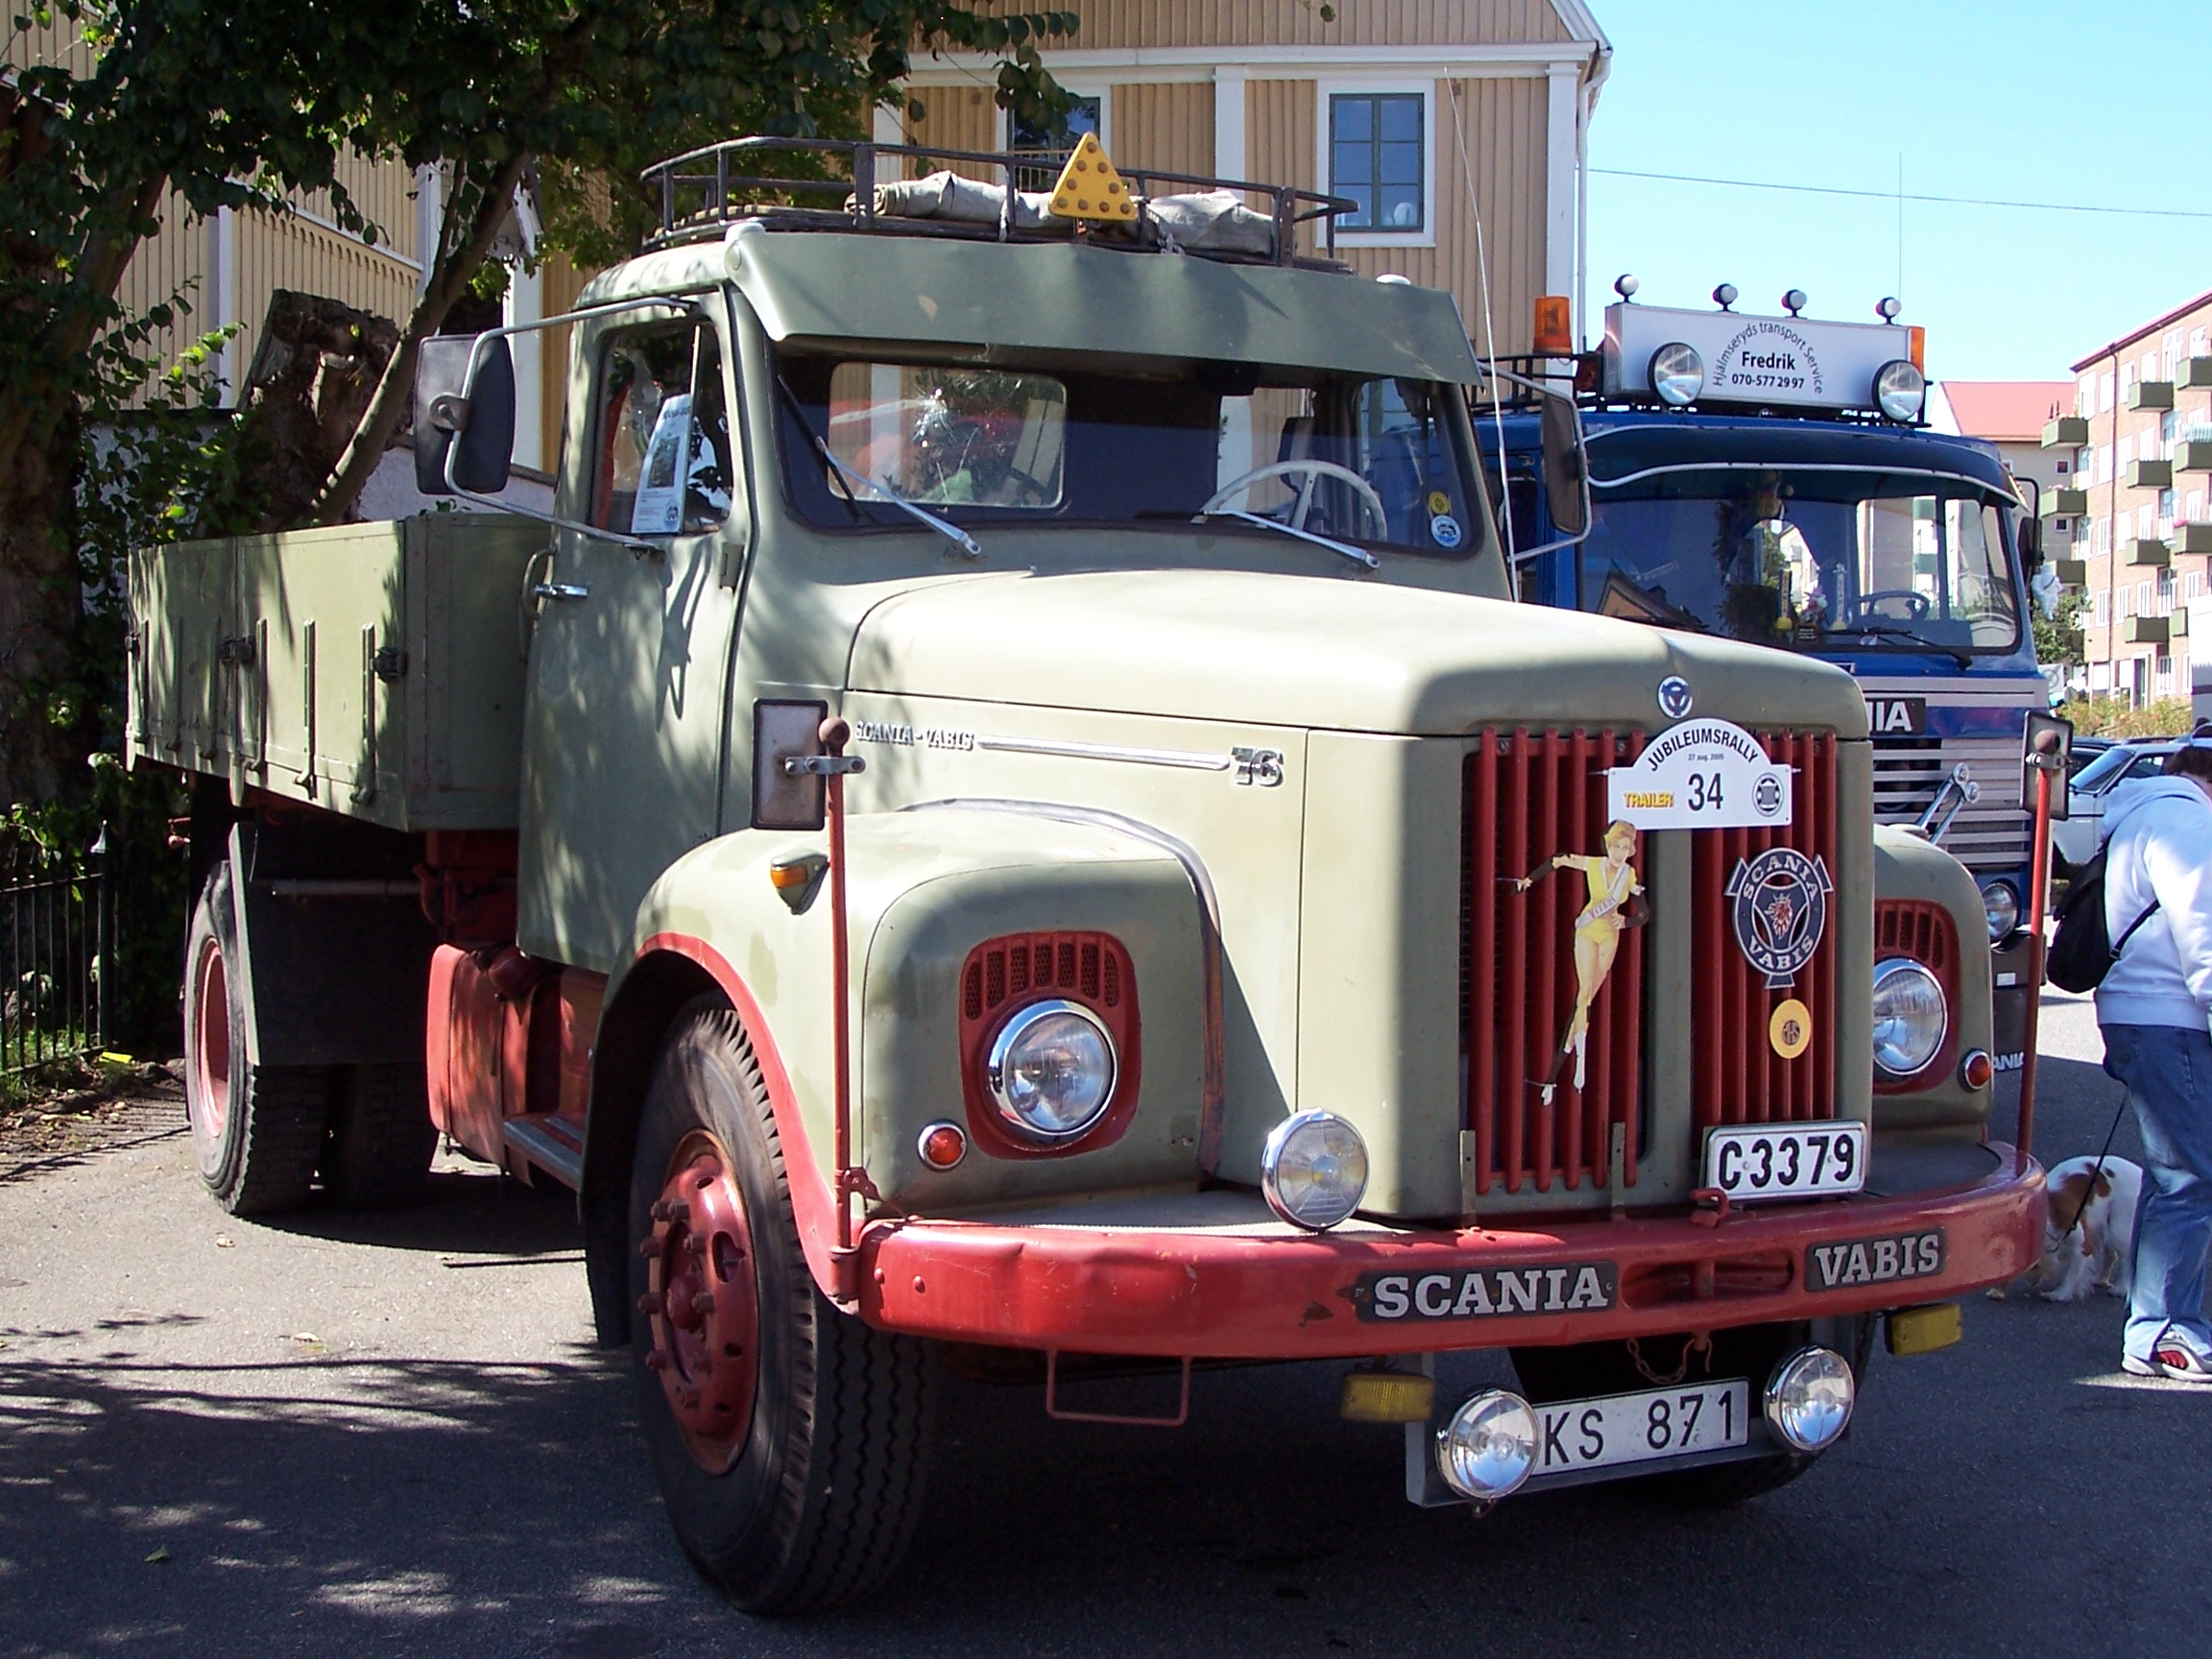 Scania-VABIS L76